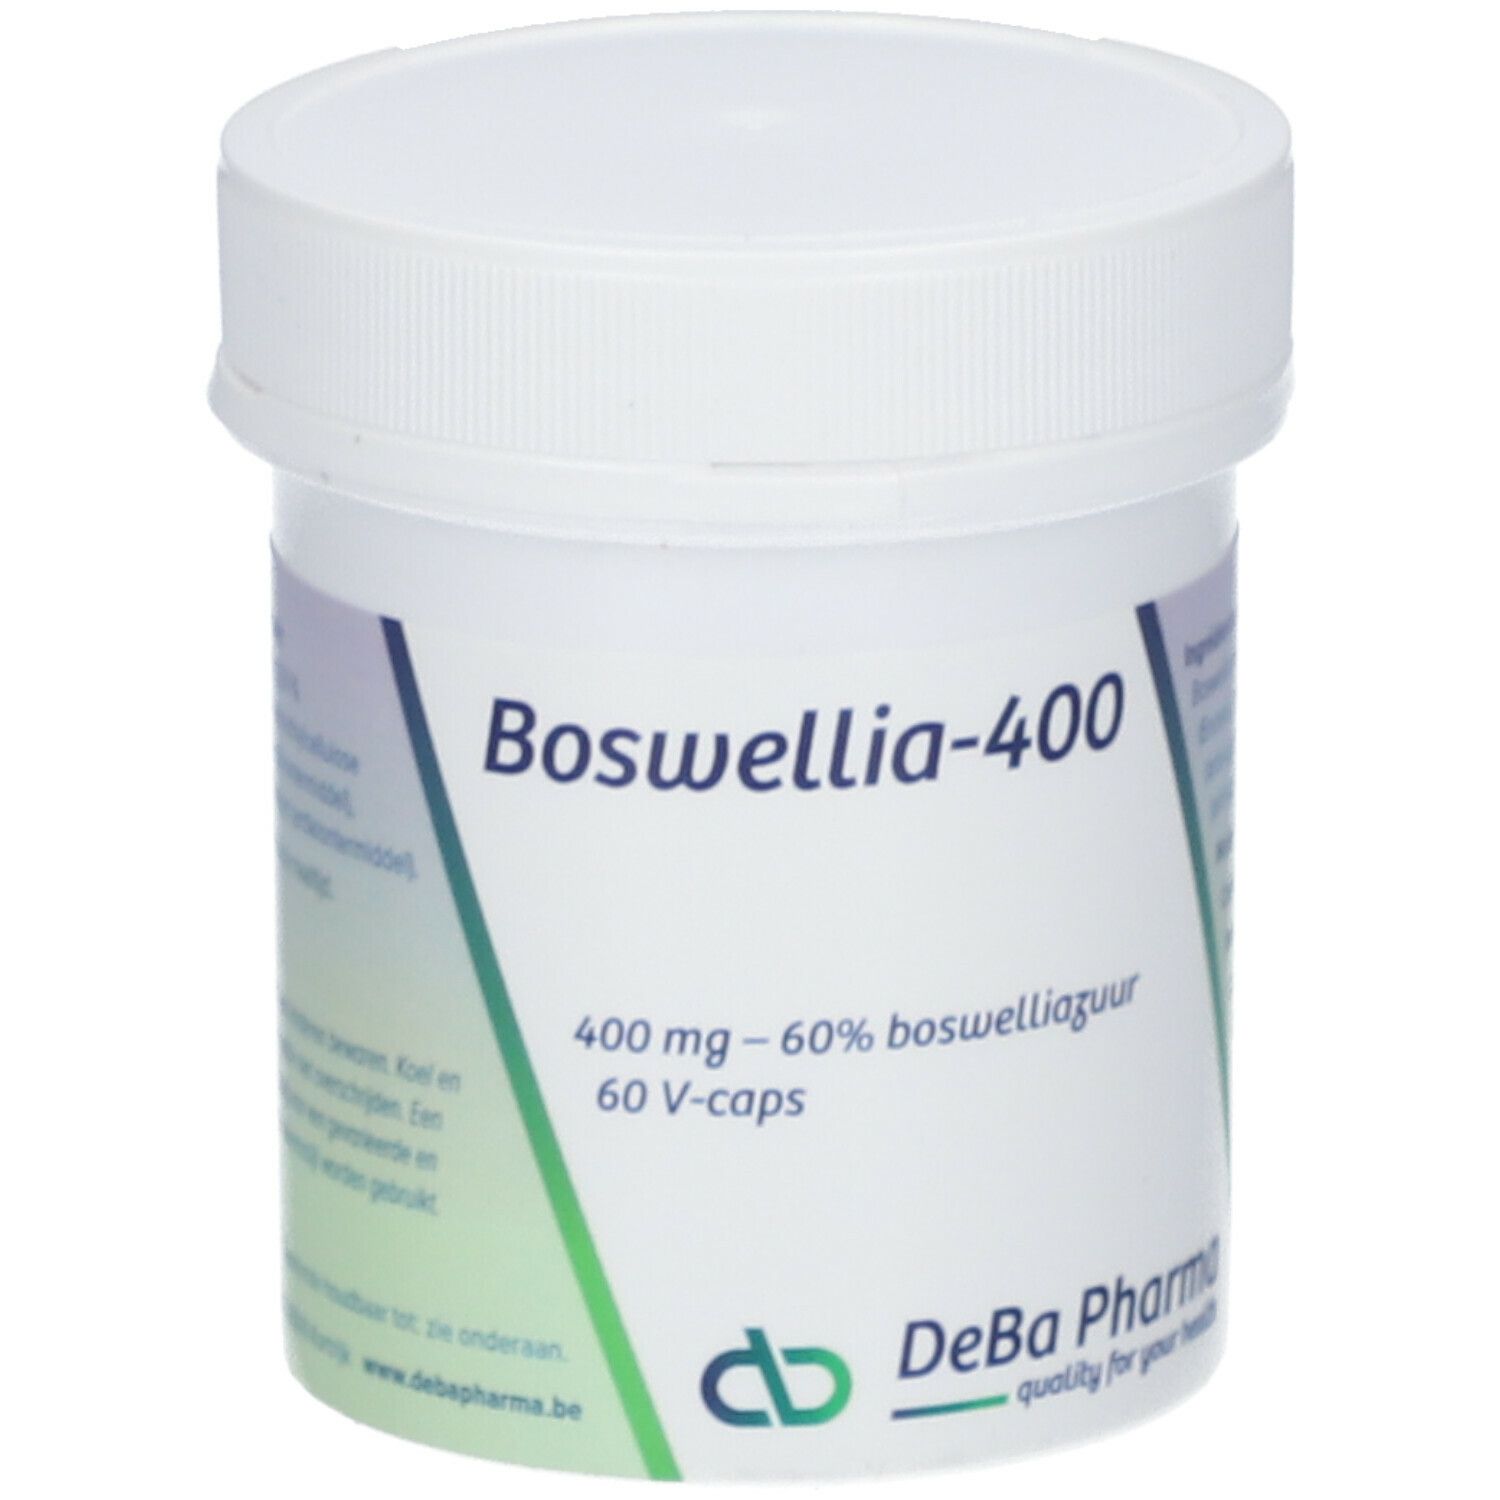 DeBa Pharma Boswellia Extract 400mg